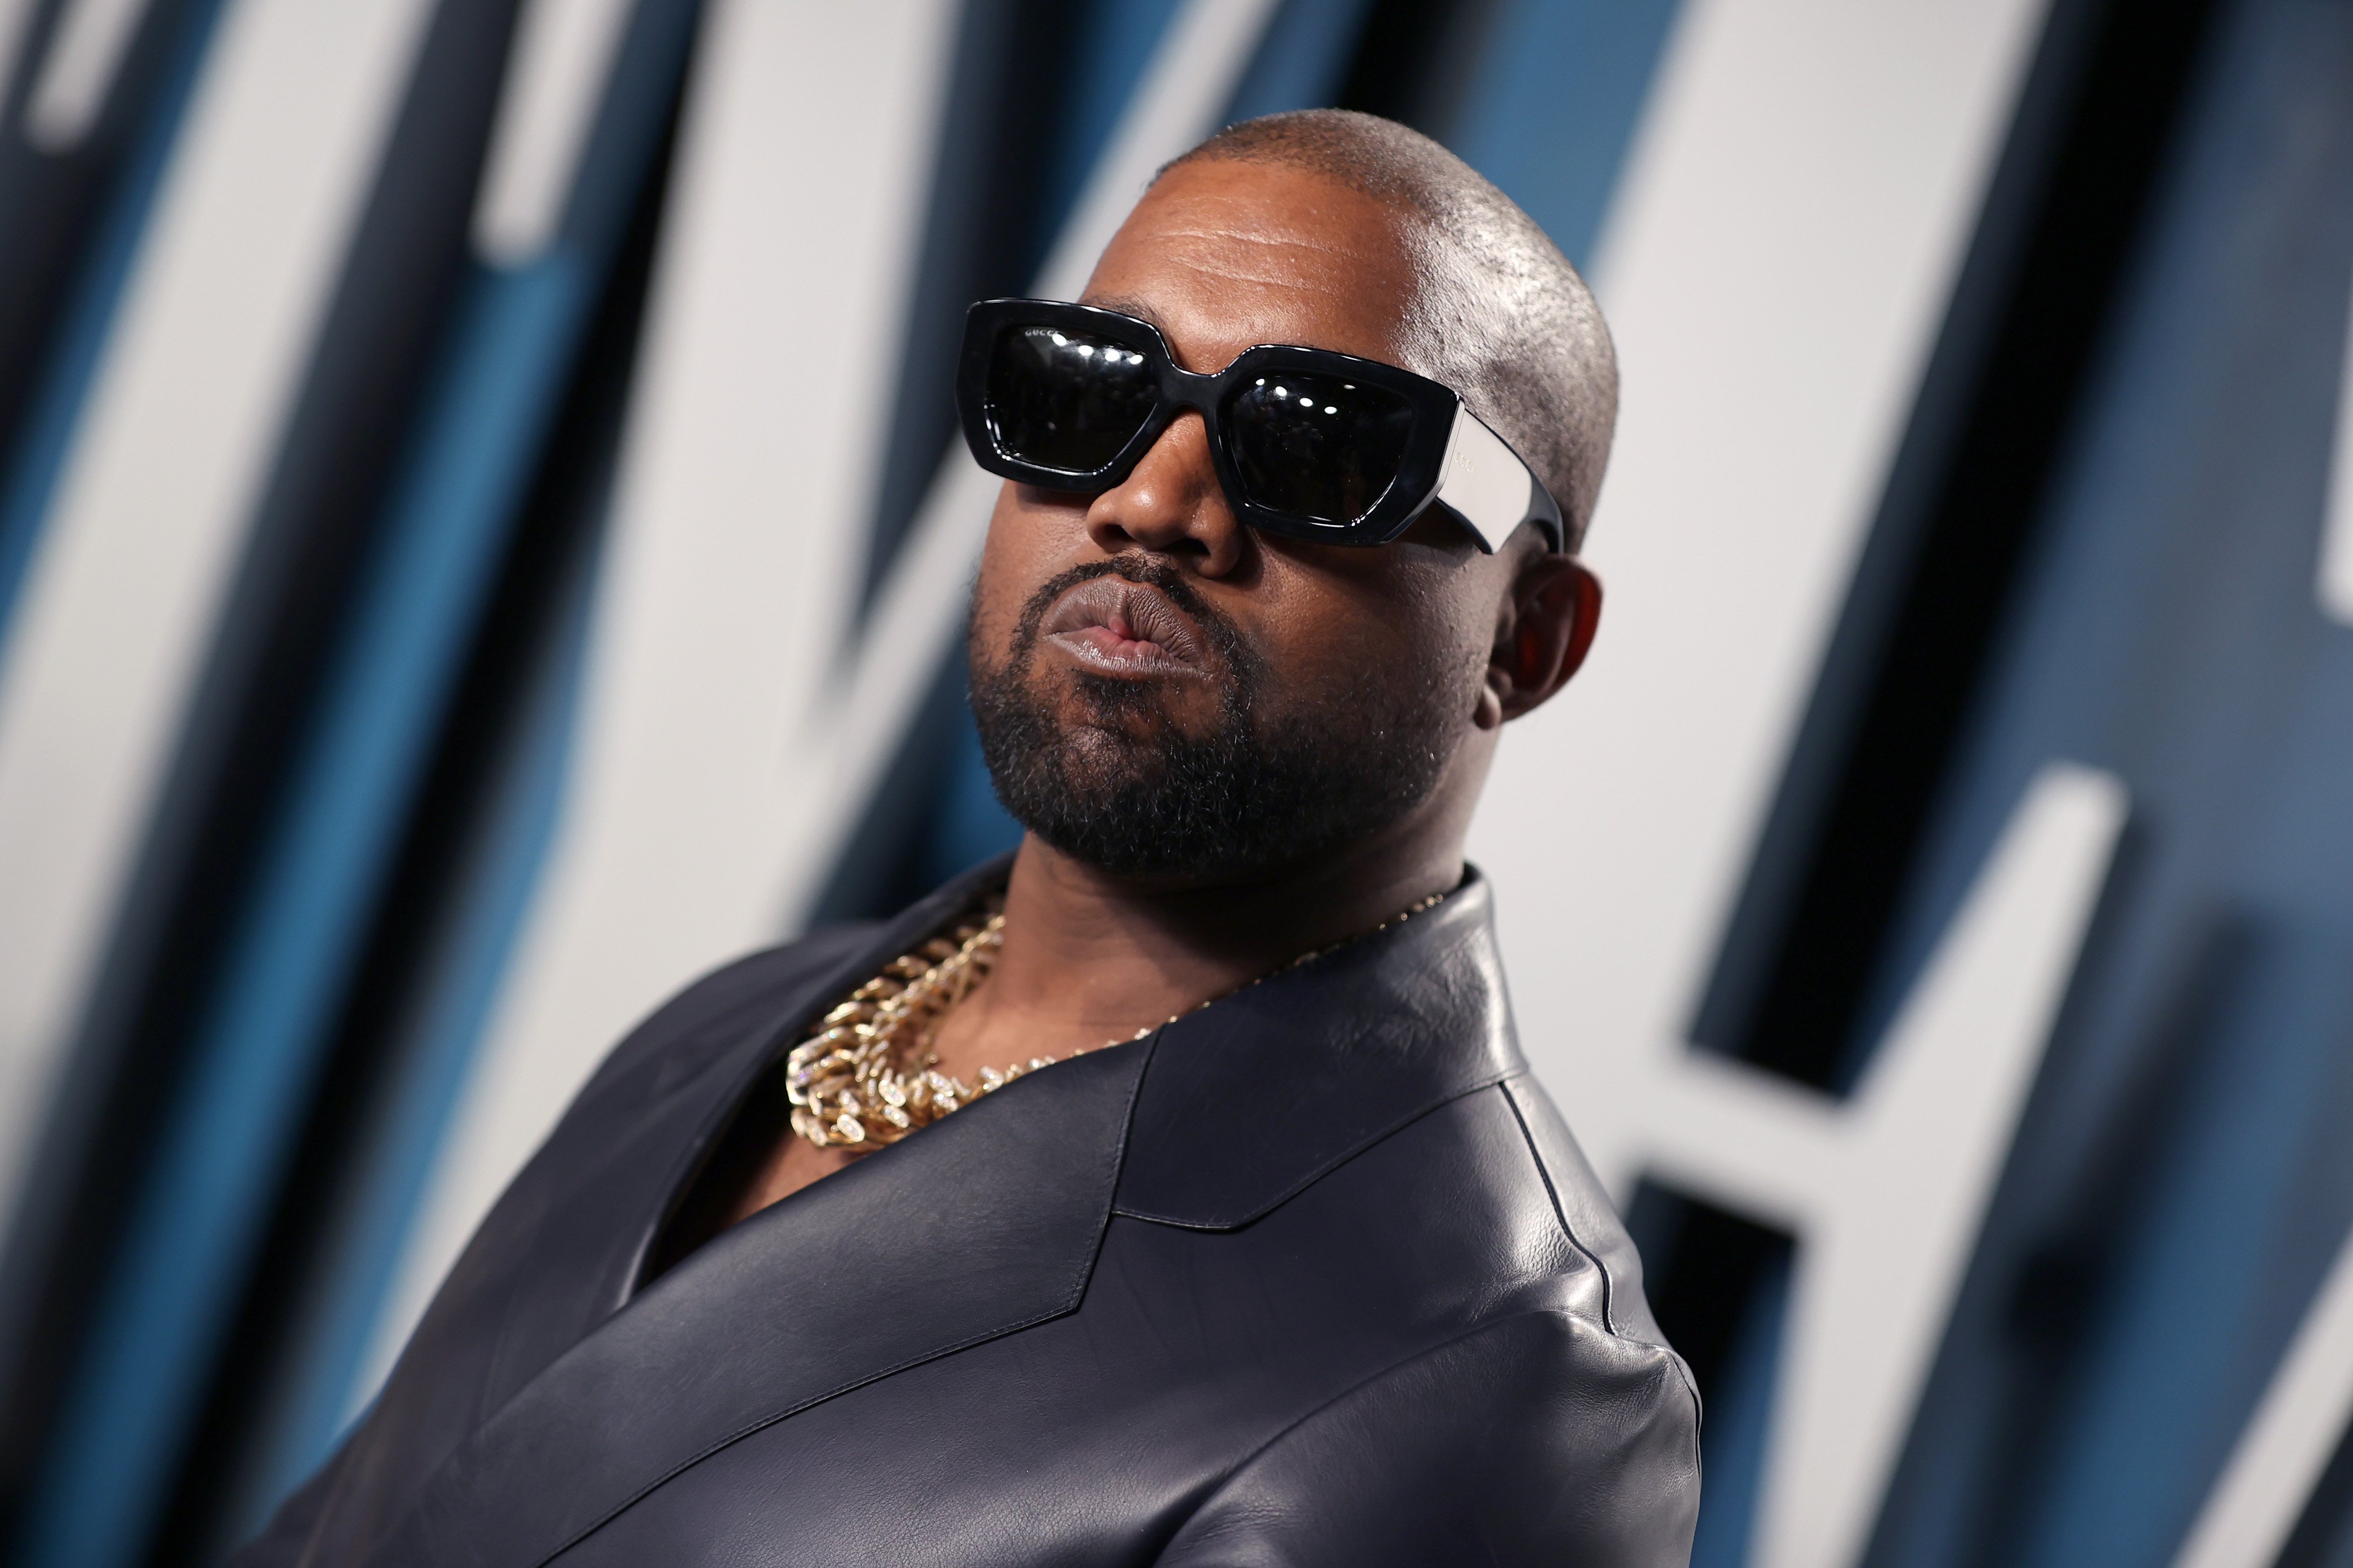 Kanye West's Best Samples